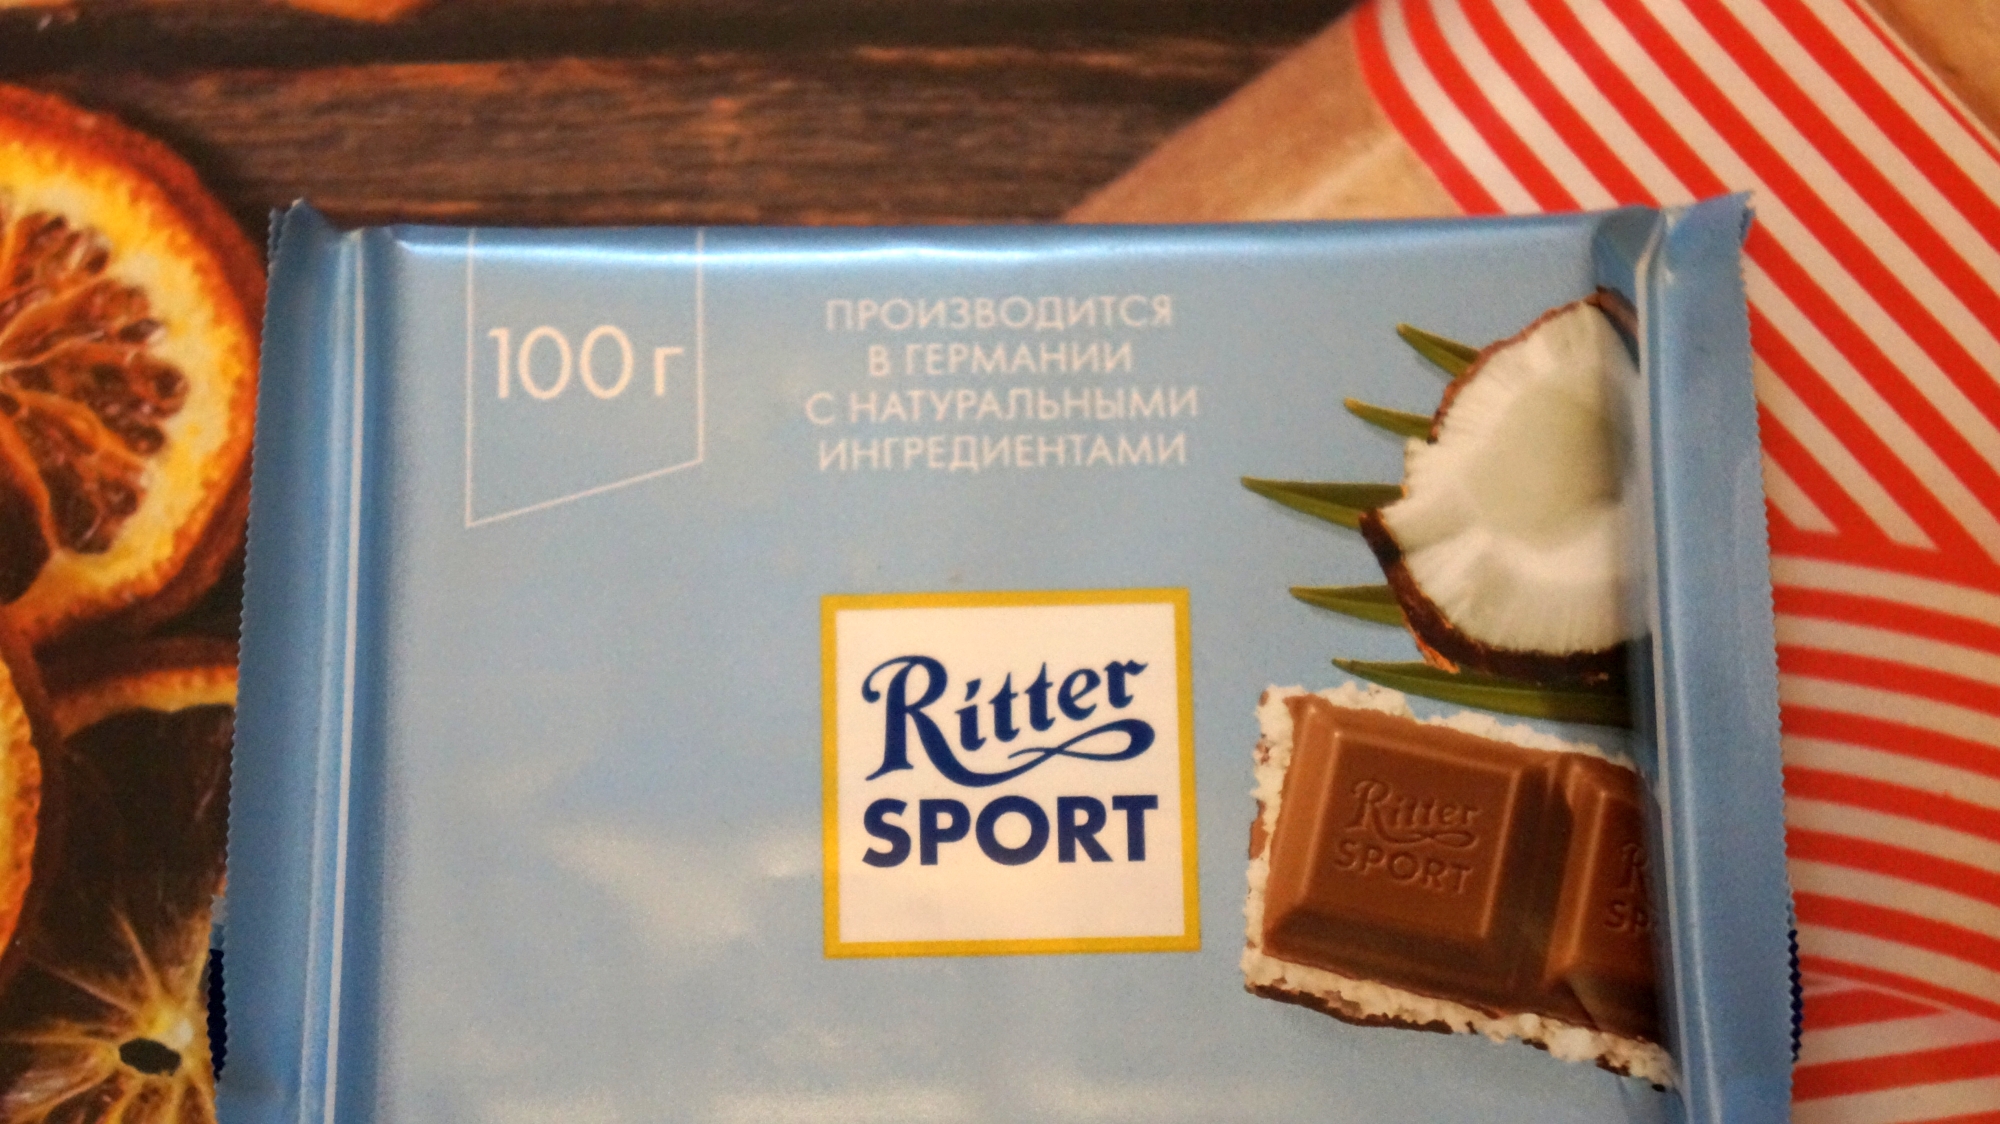 Шоколад Ritter Sport Кокос